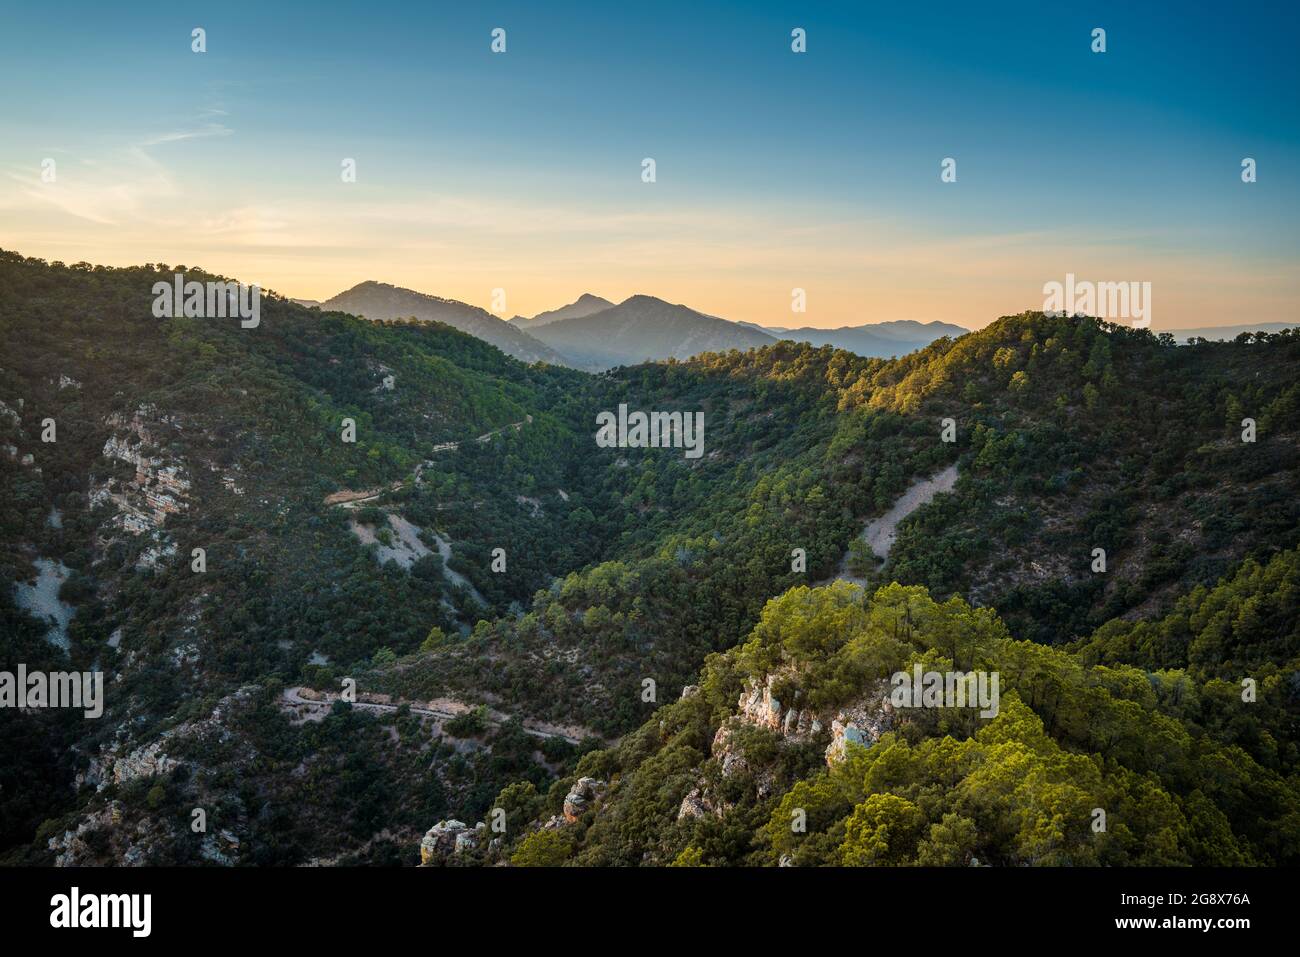 Paysage montagneux avec pins et chêne-liège dans le Parc naturel de la Sierra de Espadan, région de Valence, Espagne. Banque D'Images